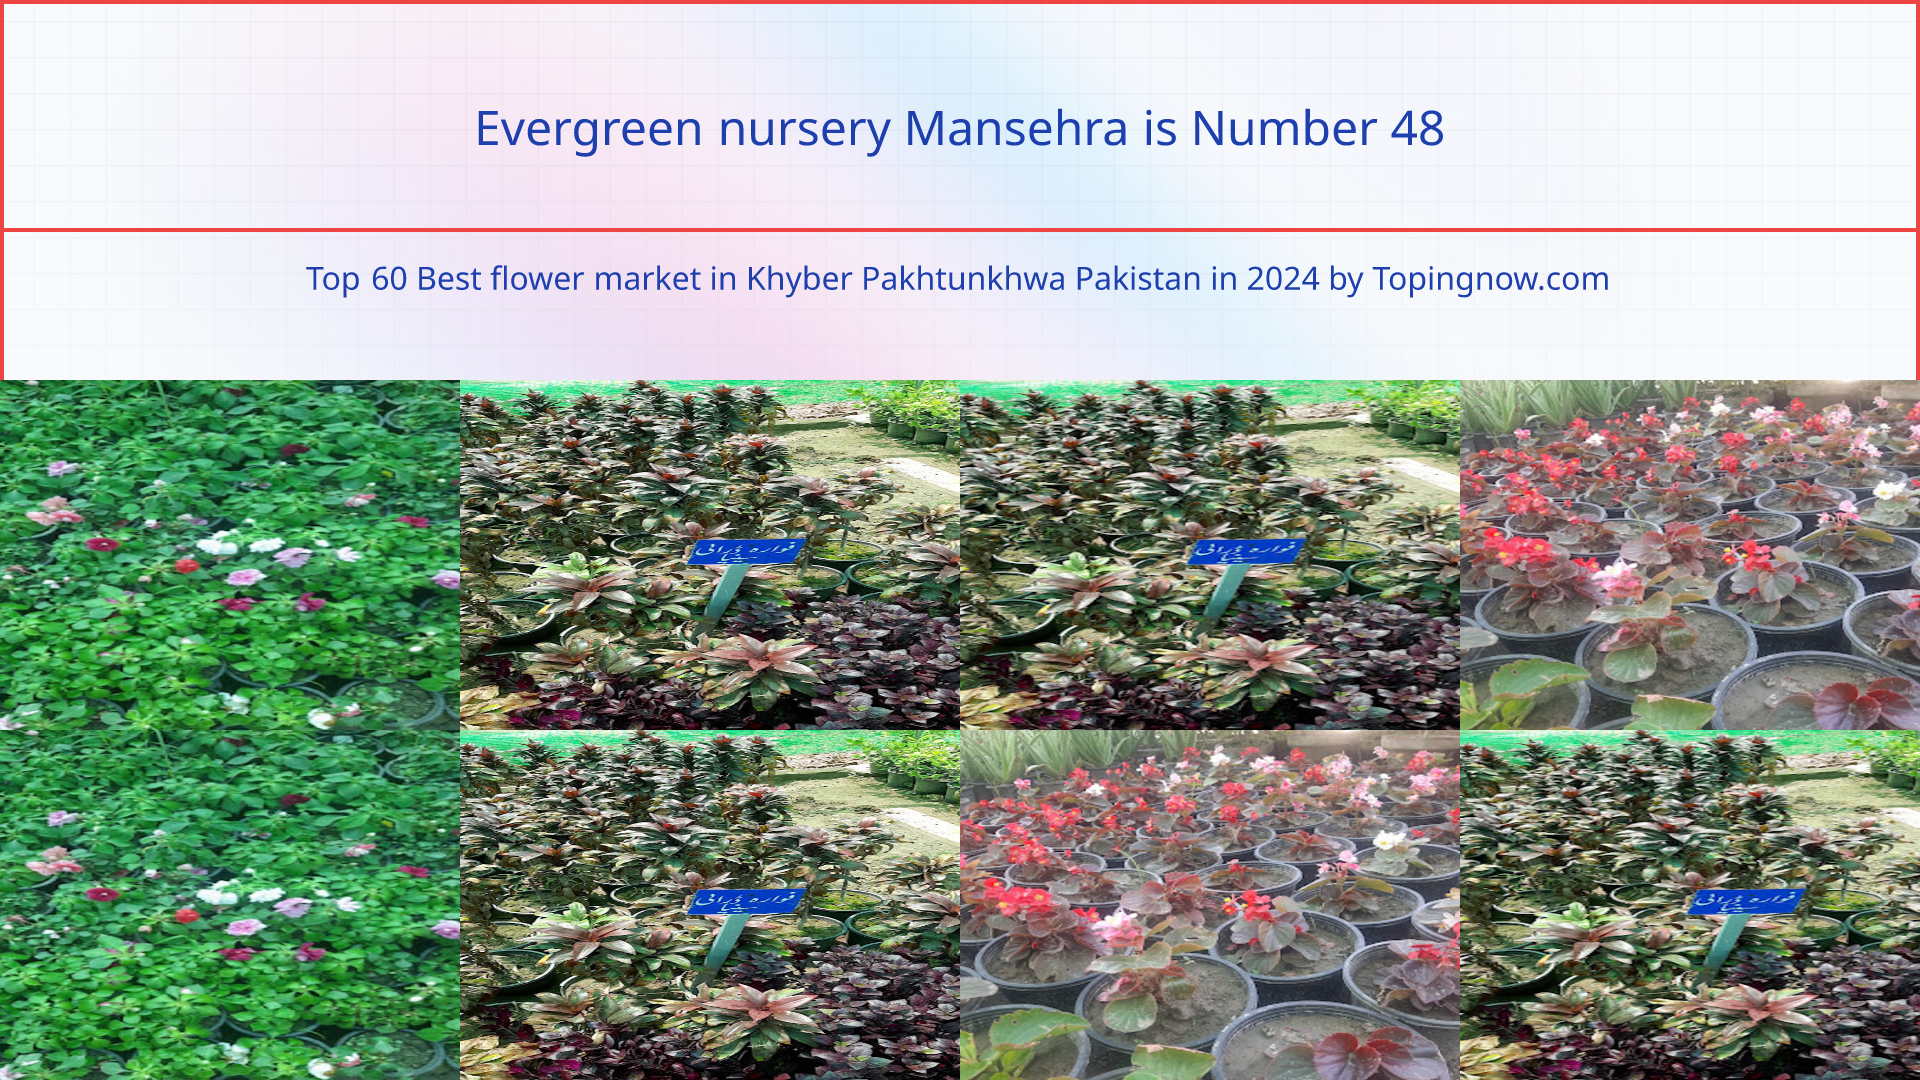 Evergreen nursery Mansehra: Top 60 Best flower market in Khyber Pakhtunkhwa Pakistan in 2024